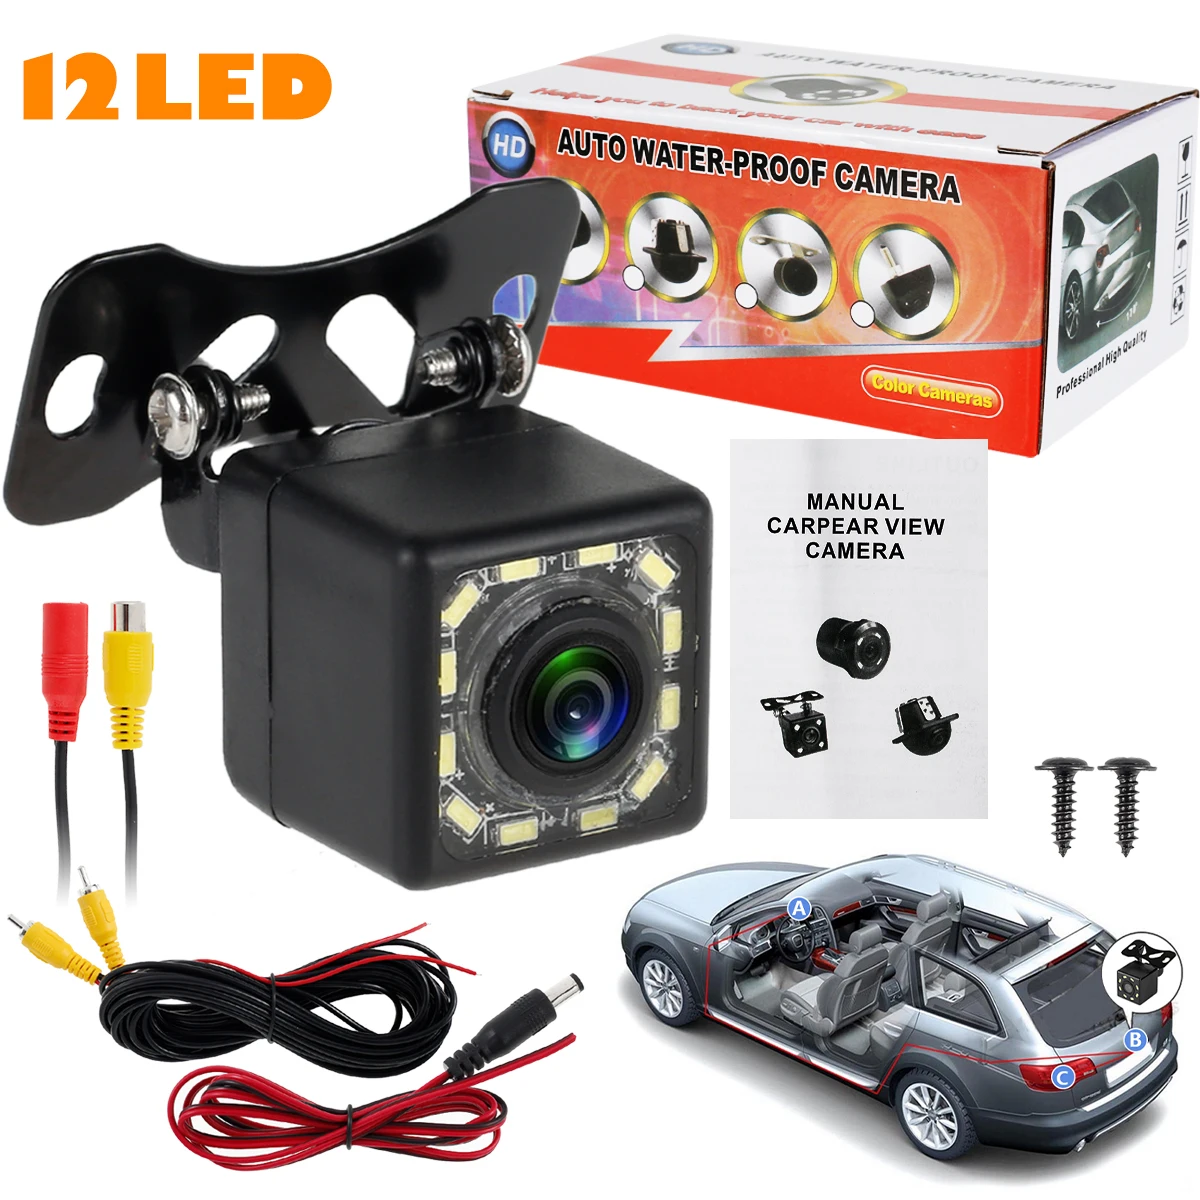 

Car Backup Camera 12 LED Night Vision Car Rear View Camera 12V IP66 Waterproof Car Reversing Camera 170 Degree Wide Viewing